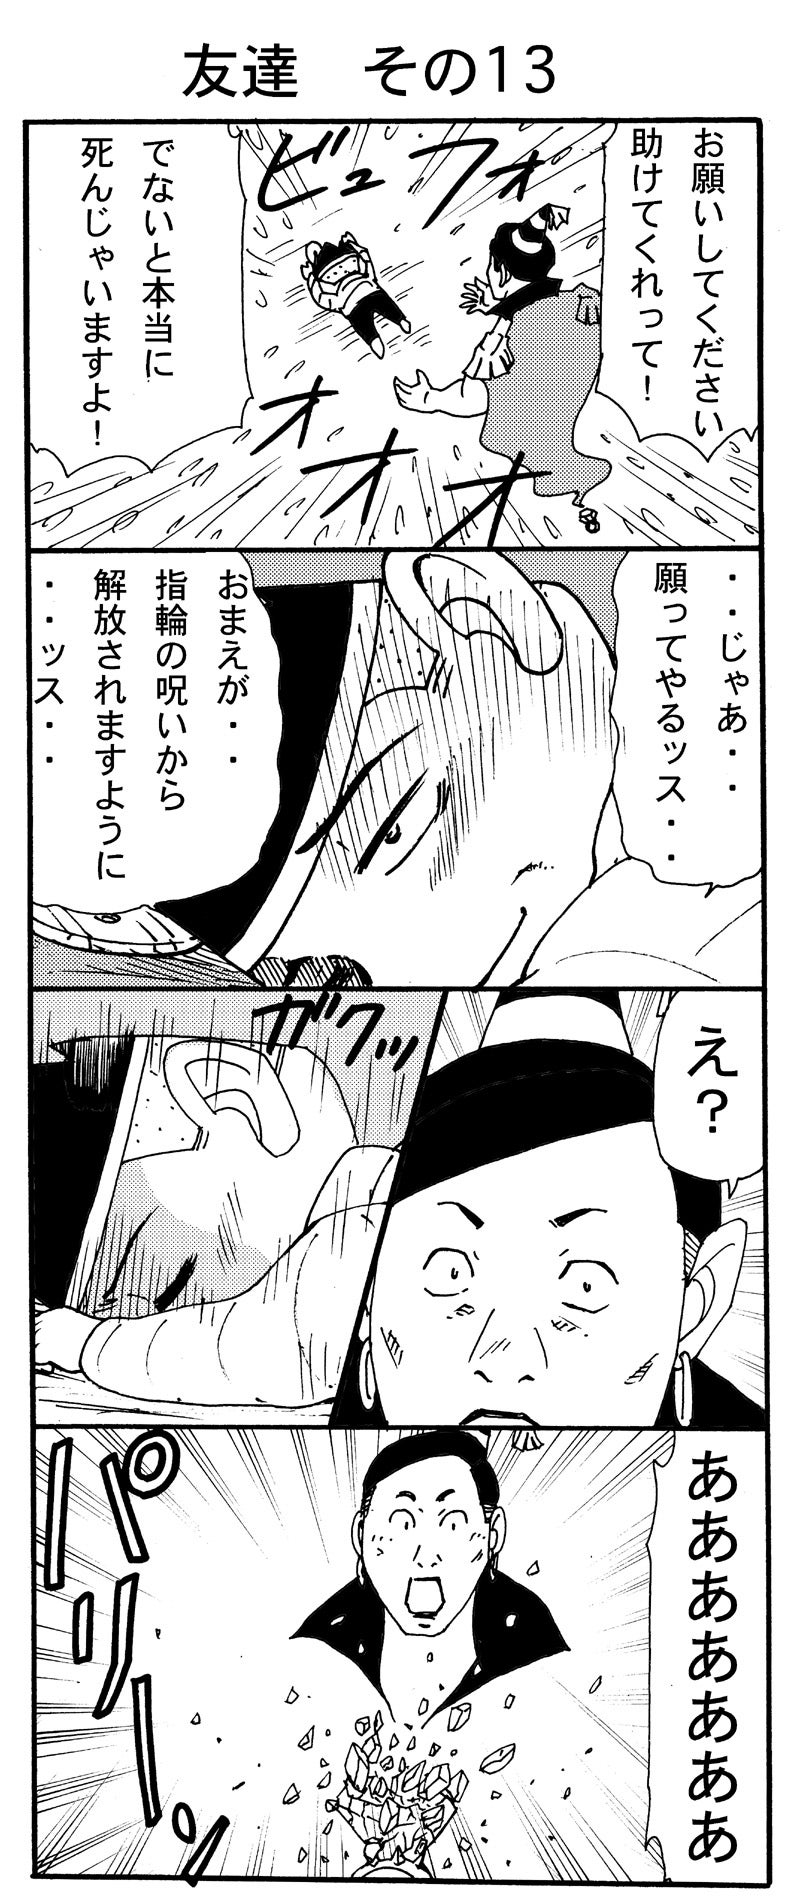 電撃ドクターモアイくん2 第13話 漫画家 岩村俊哉 オフィシャルブログ イワムランド